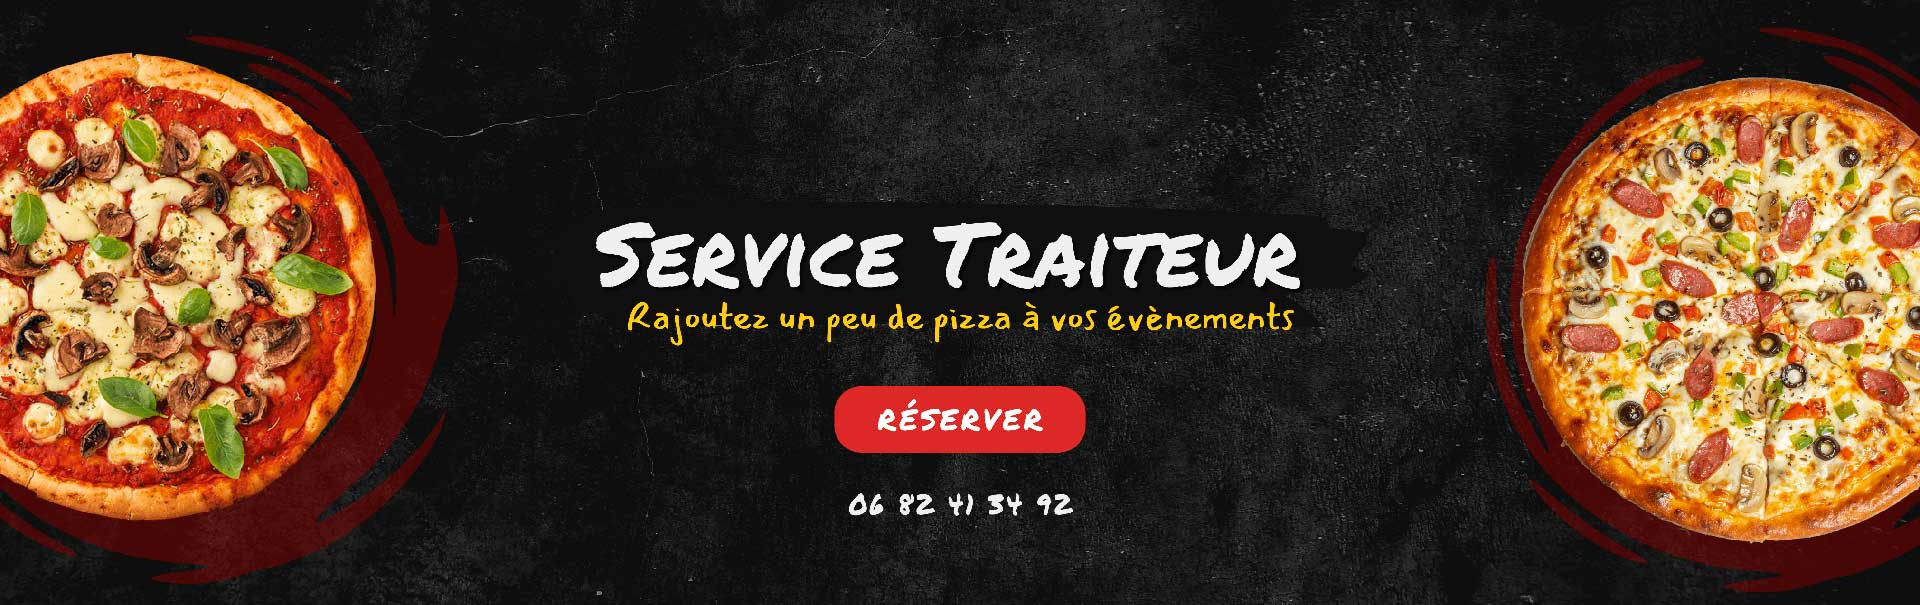 Service traiteur Cala Pizza